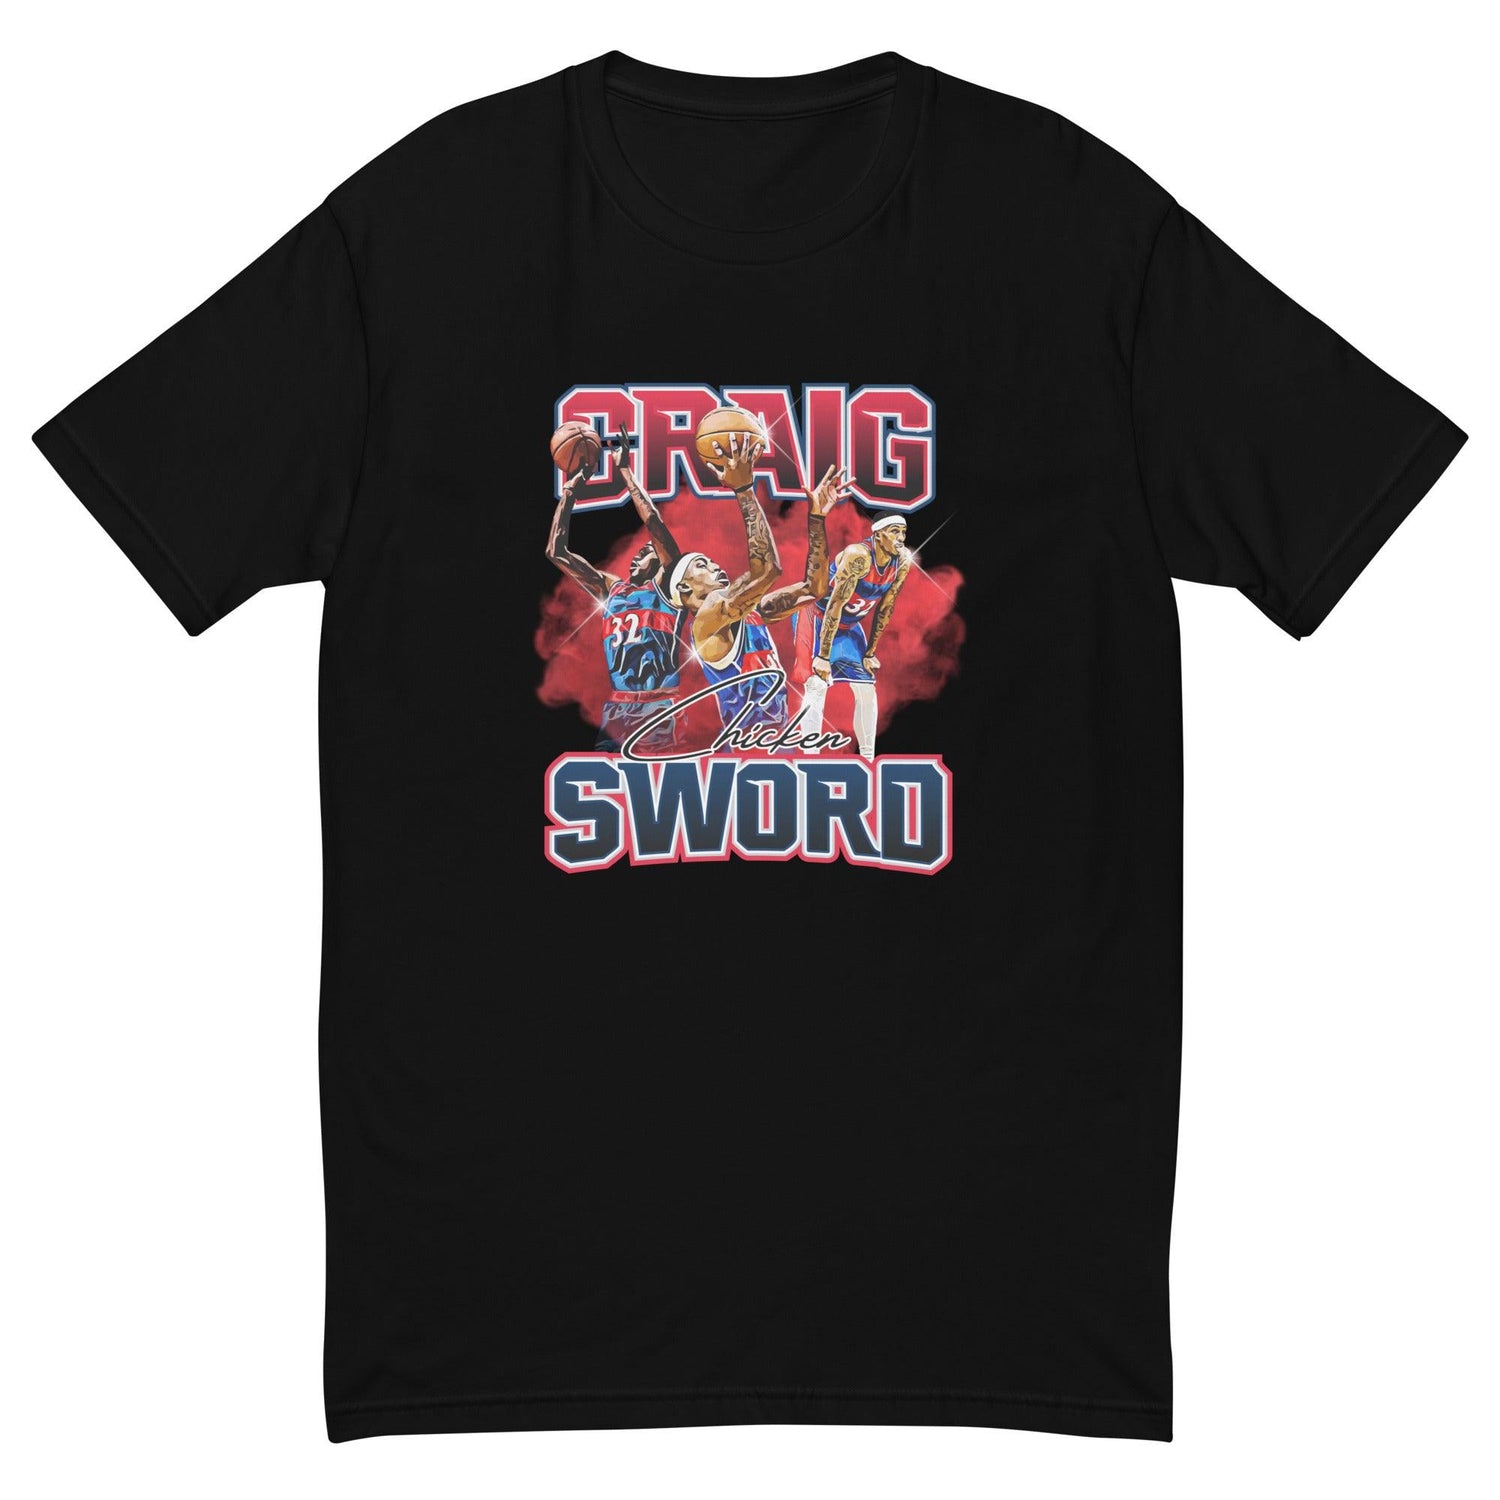 Craig Sword "Limited Edition" T-shirt - Fan Arch